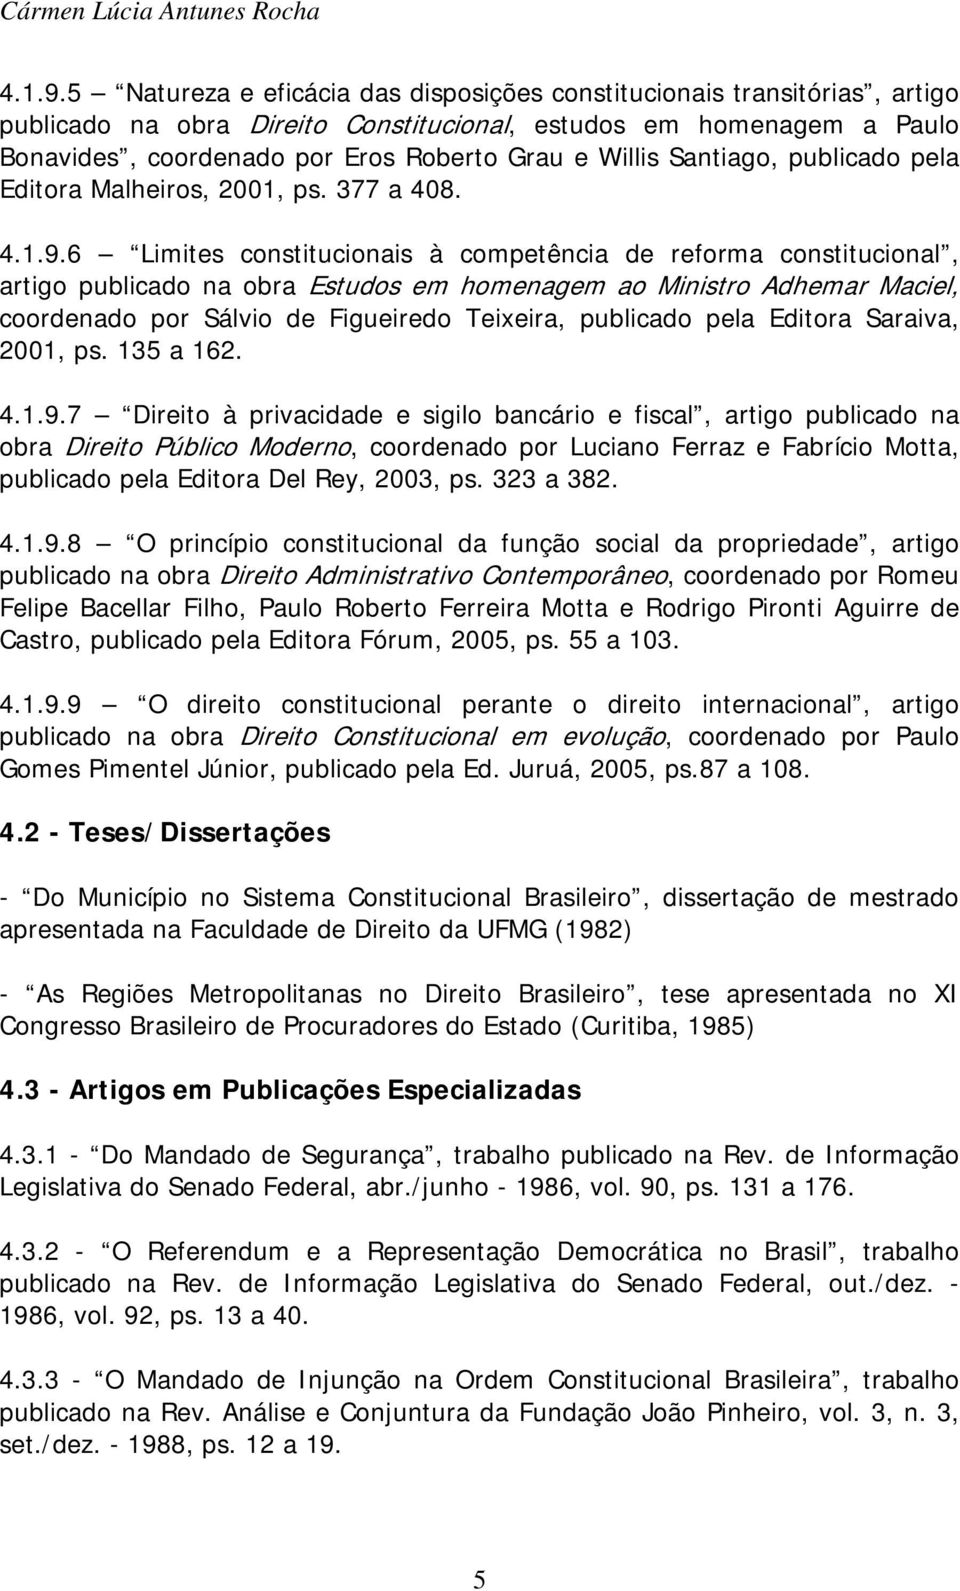 Santiago, publicado pela Editora Malheiros, 2001, ps. 377 a 408.